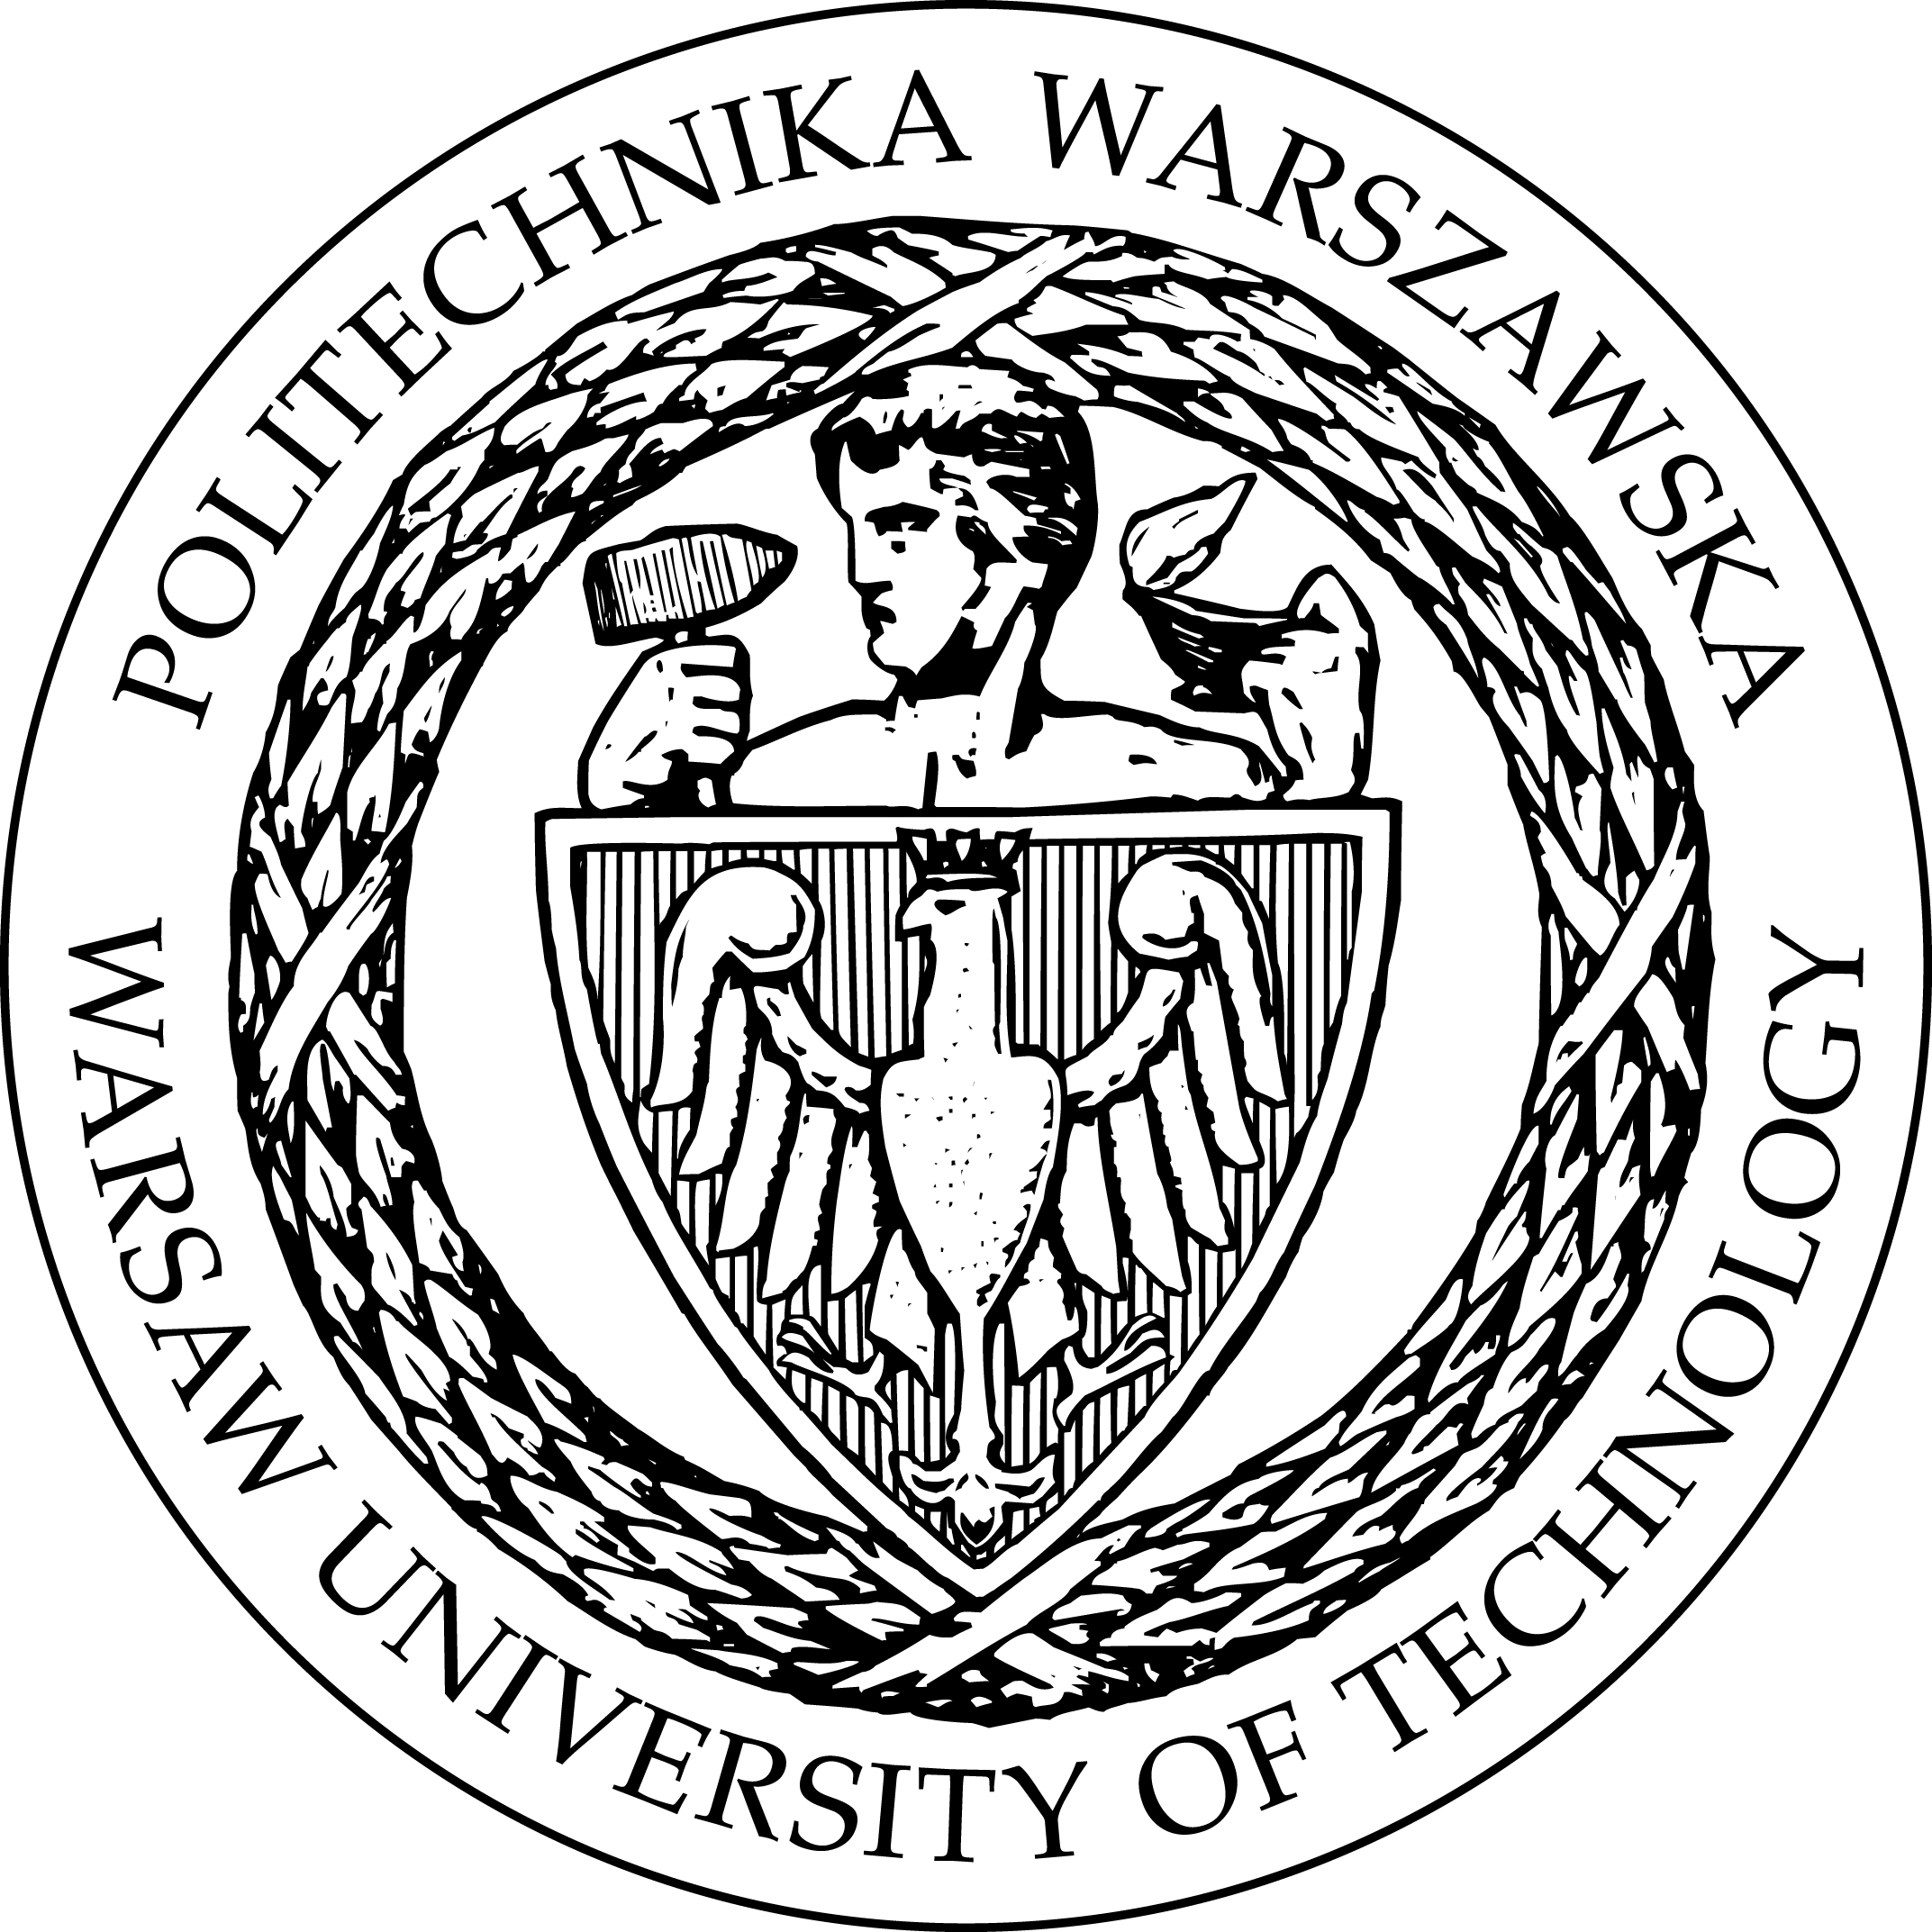 logo_pw